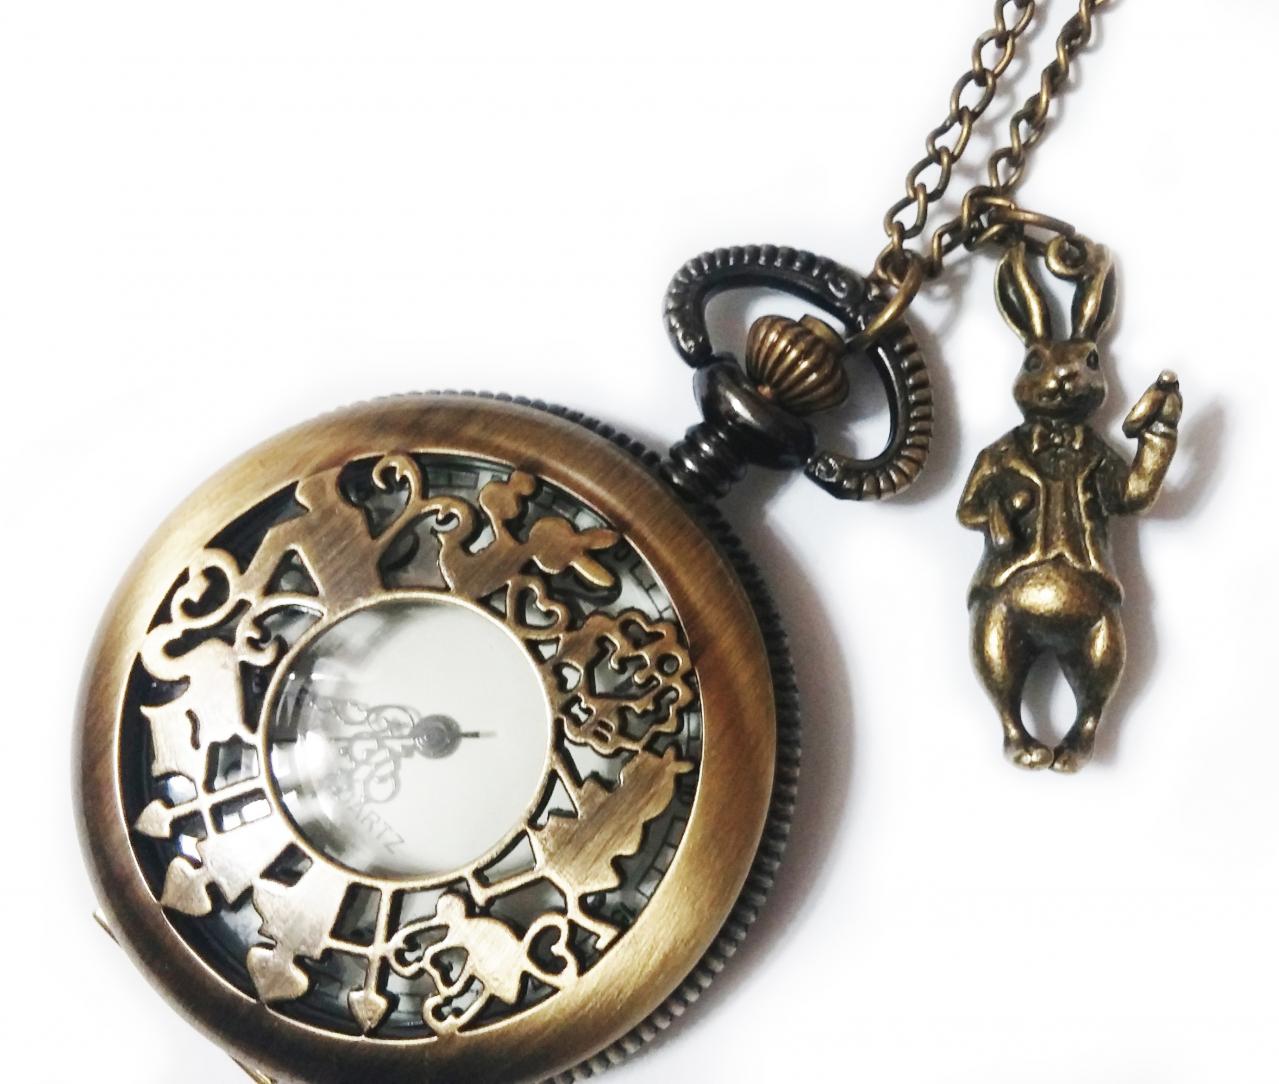 Alice In Wonderland Pocket Watch Necklace Chain - Vintage Style Mr Rabbit Pendant - Steampunk Alice White Rabbit Charm Pocketwatch